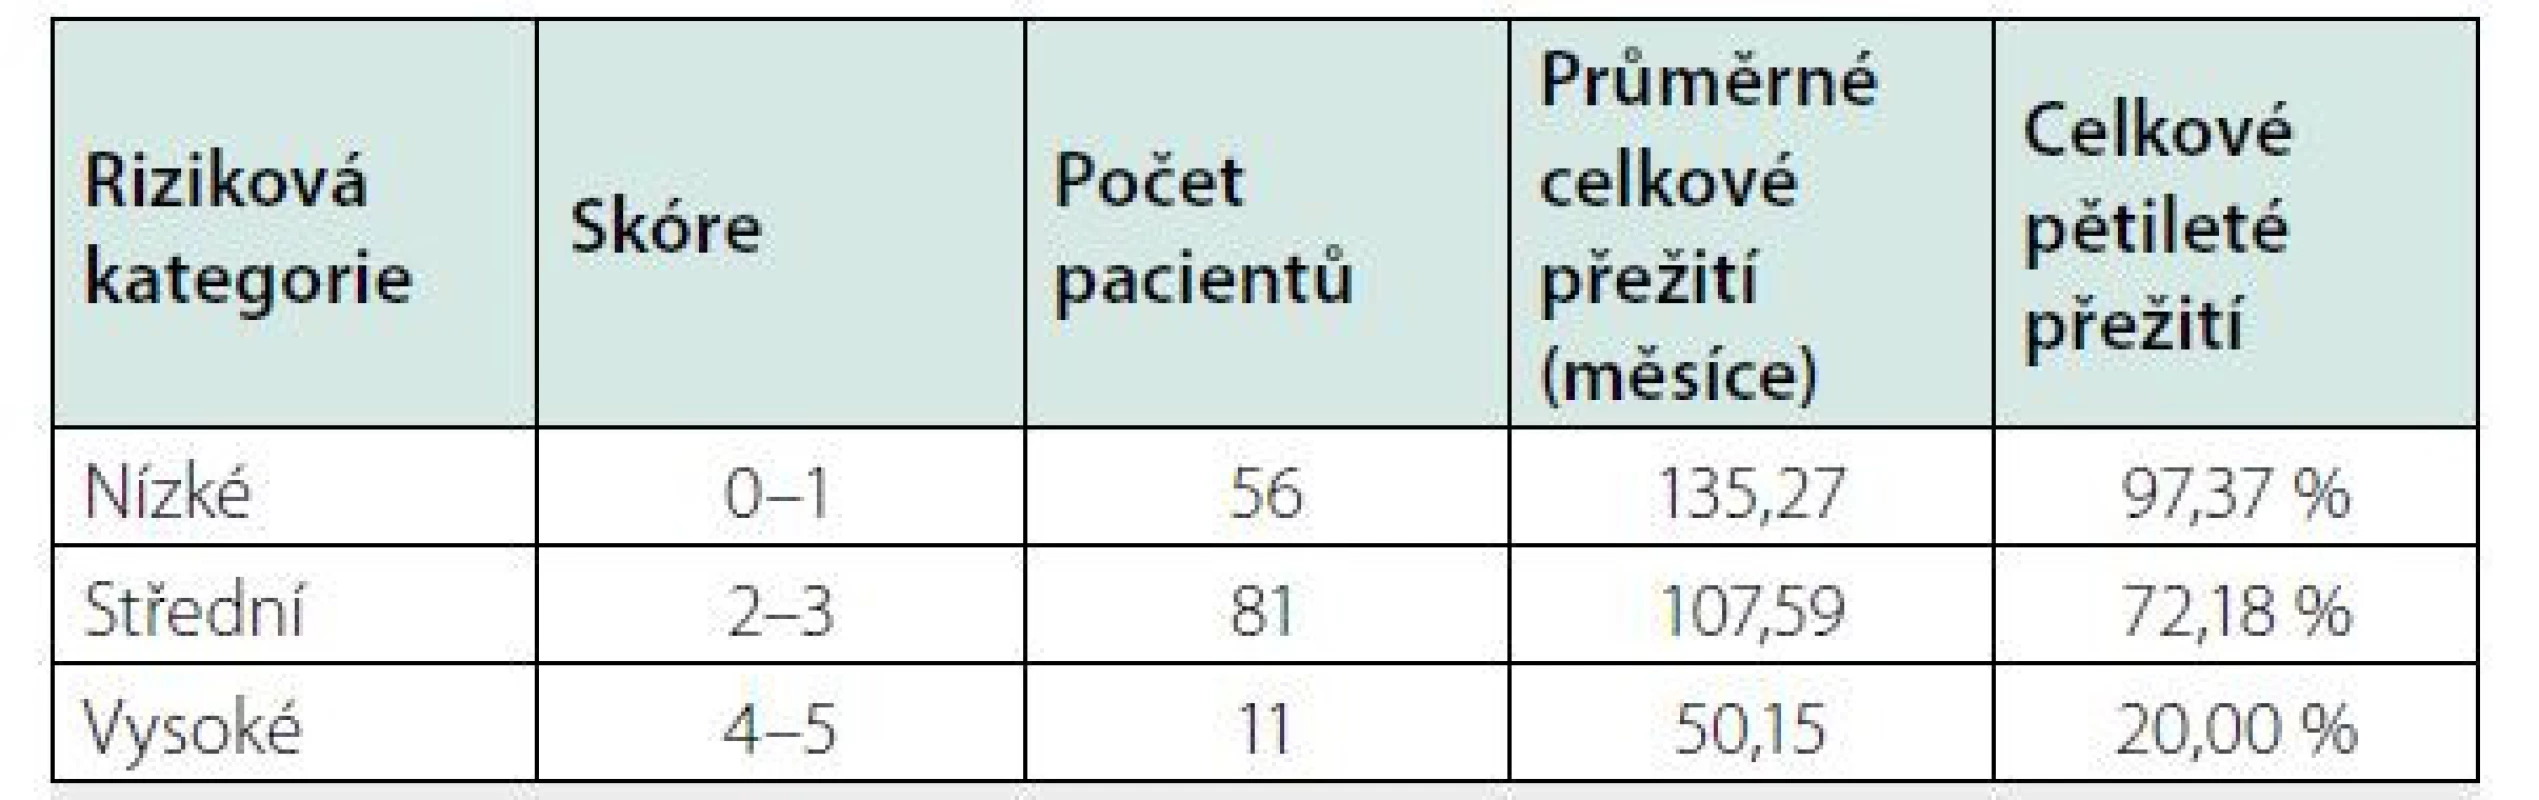 Mezinárodní prognostický index (IPI iMCD) vypracovaný analýzou
souboru 148 pacientů a verifikovaný na souboru 197 pacientů (27, 28)